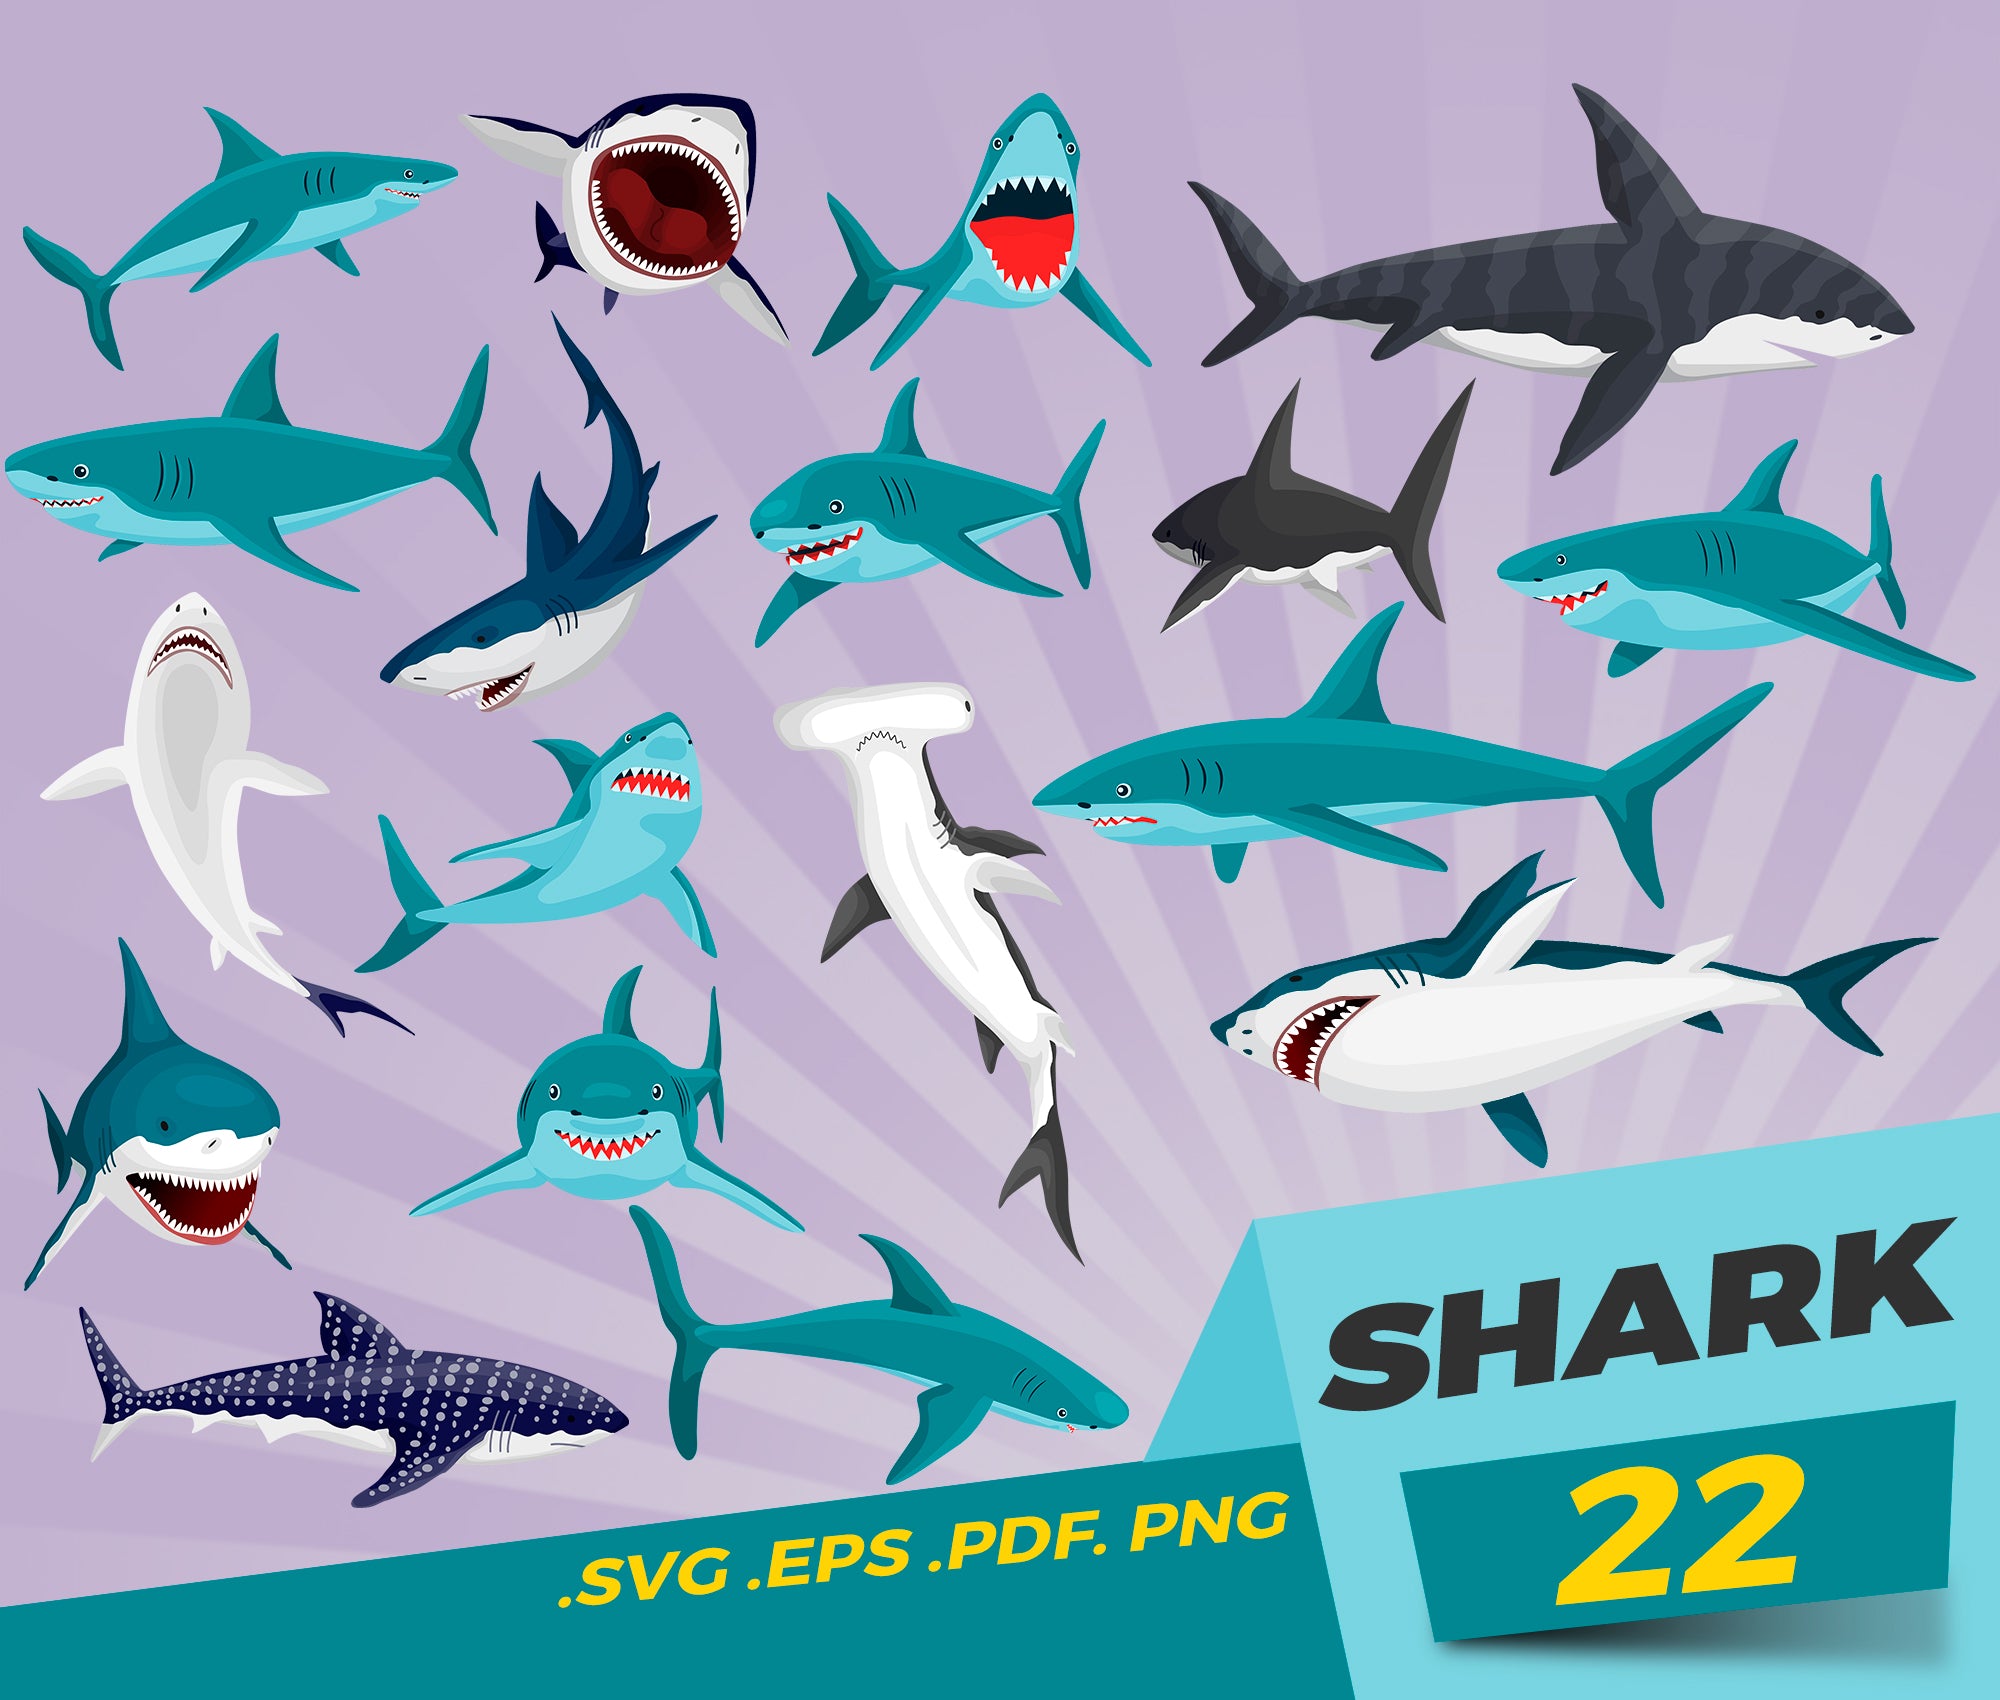 Download Shark Svg Shark Silhouette Sharks Bundle Shark Cut File Fish Svg Clipartic